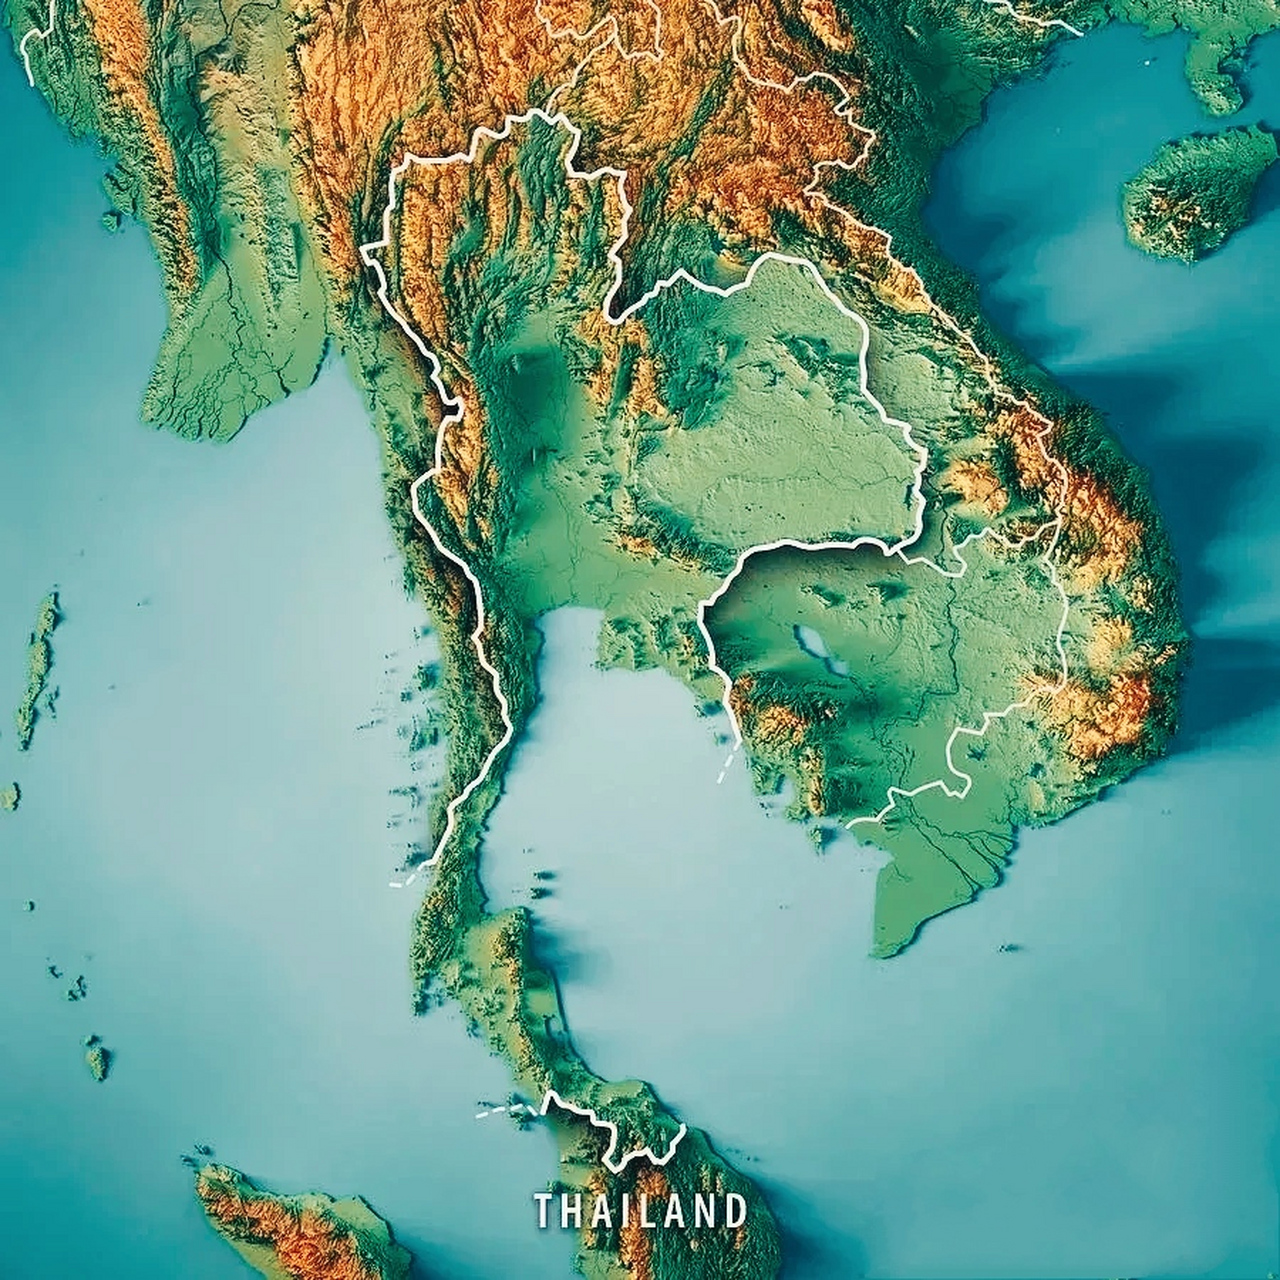 泰国地形图高清全图图片